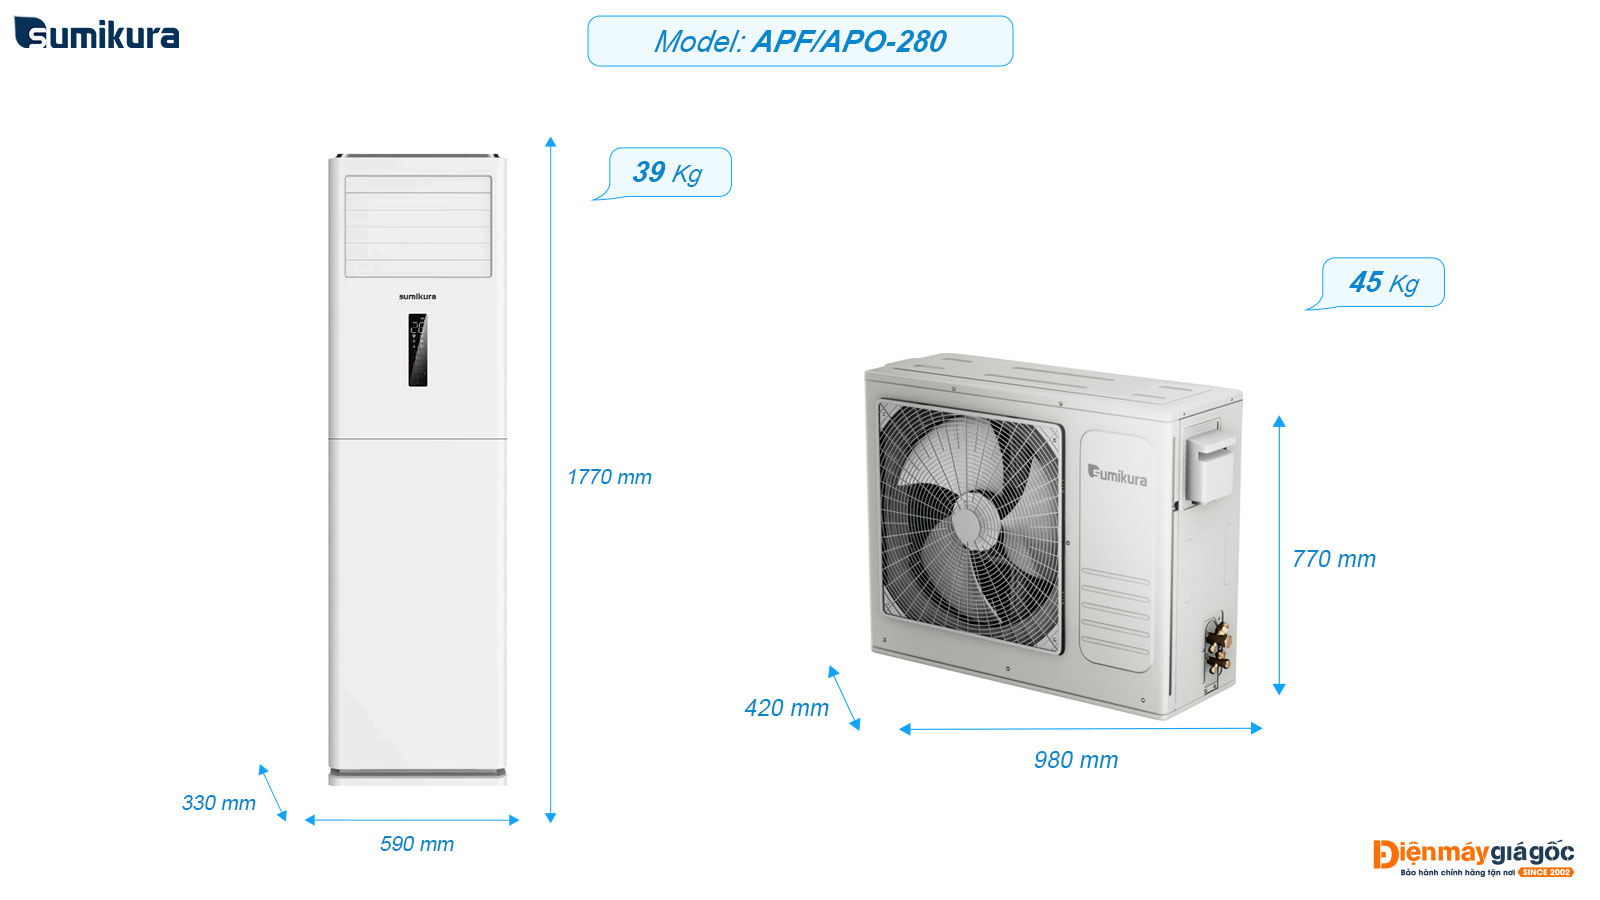 Sumikura floor standing air conditioning APF/APO-280 (3.0Hp)